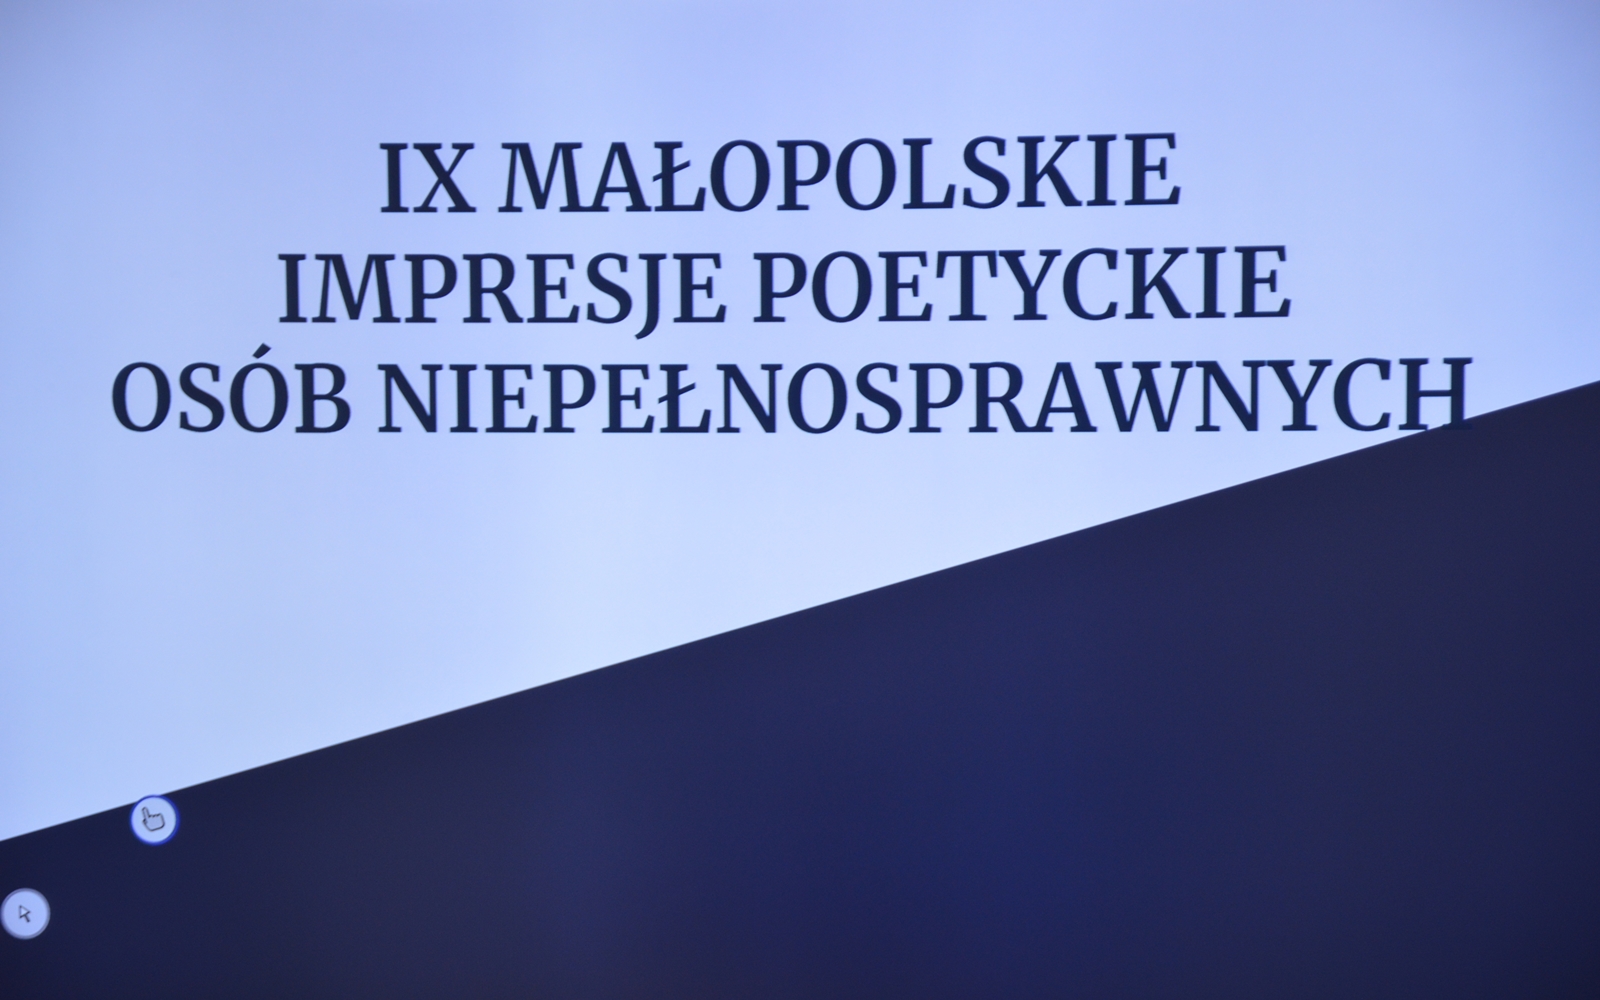 Na zdjęci widoczna jest grafika, na której napisane jest: "IX Małopolskie Impresje Poetyckie Osób Niepełnosprawnych".